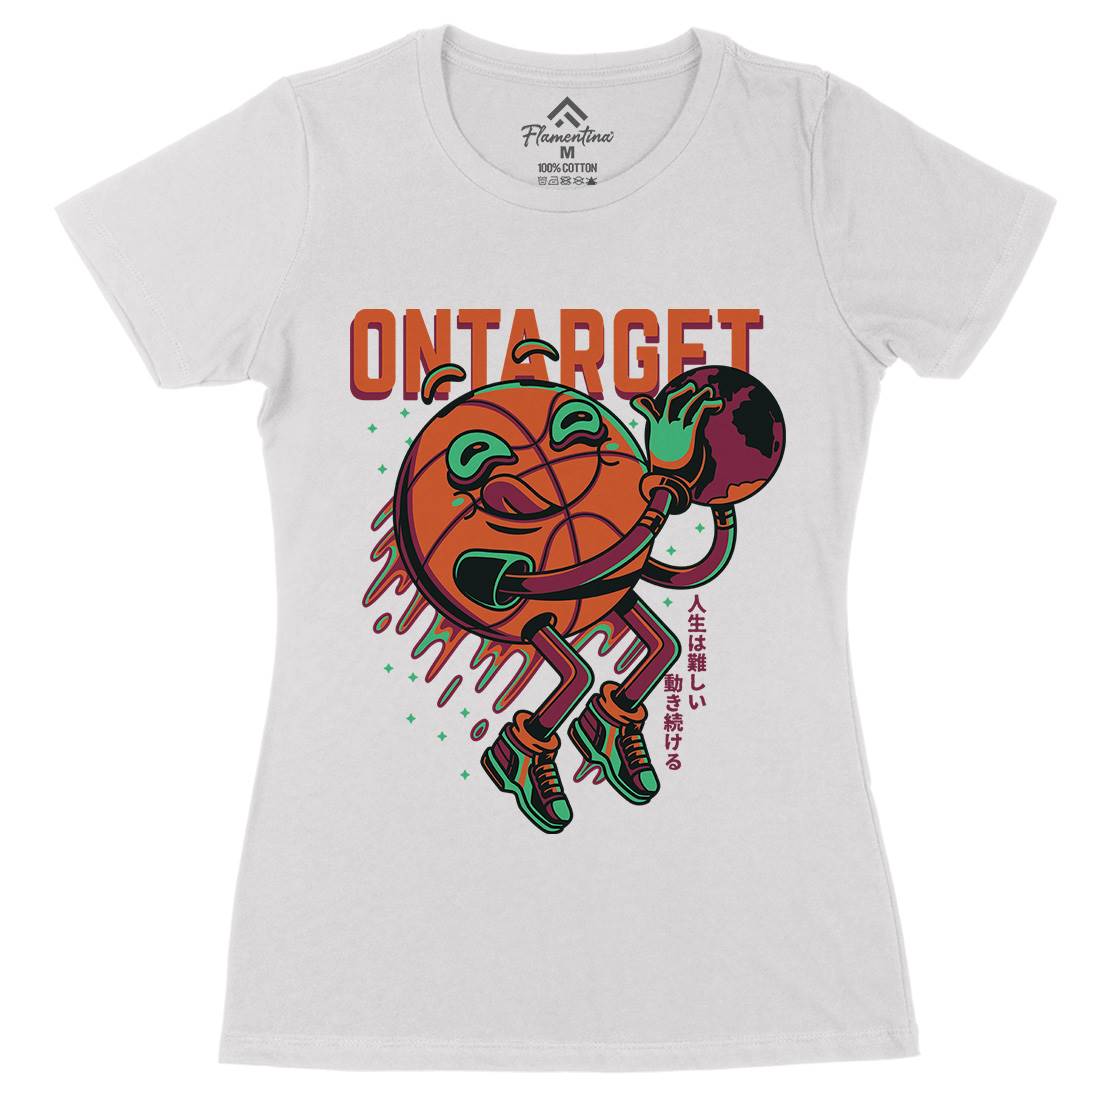 On Target Womens Organic Crew Neck T-Shirt Sport D673